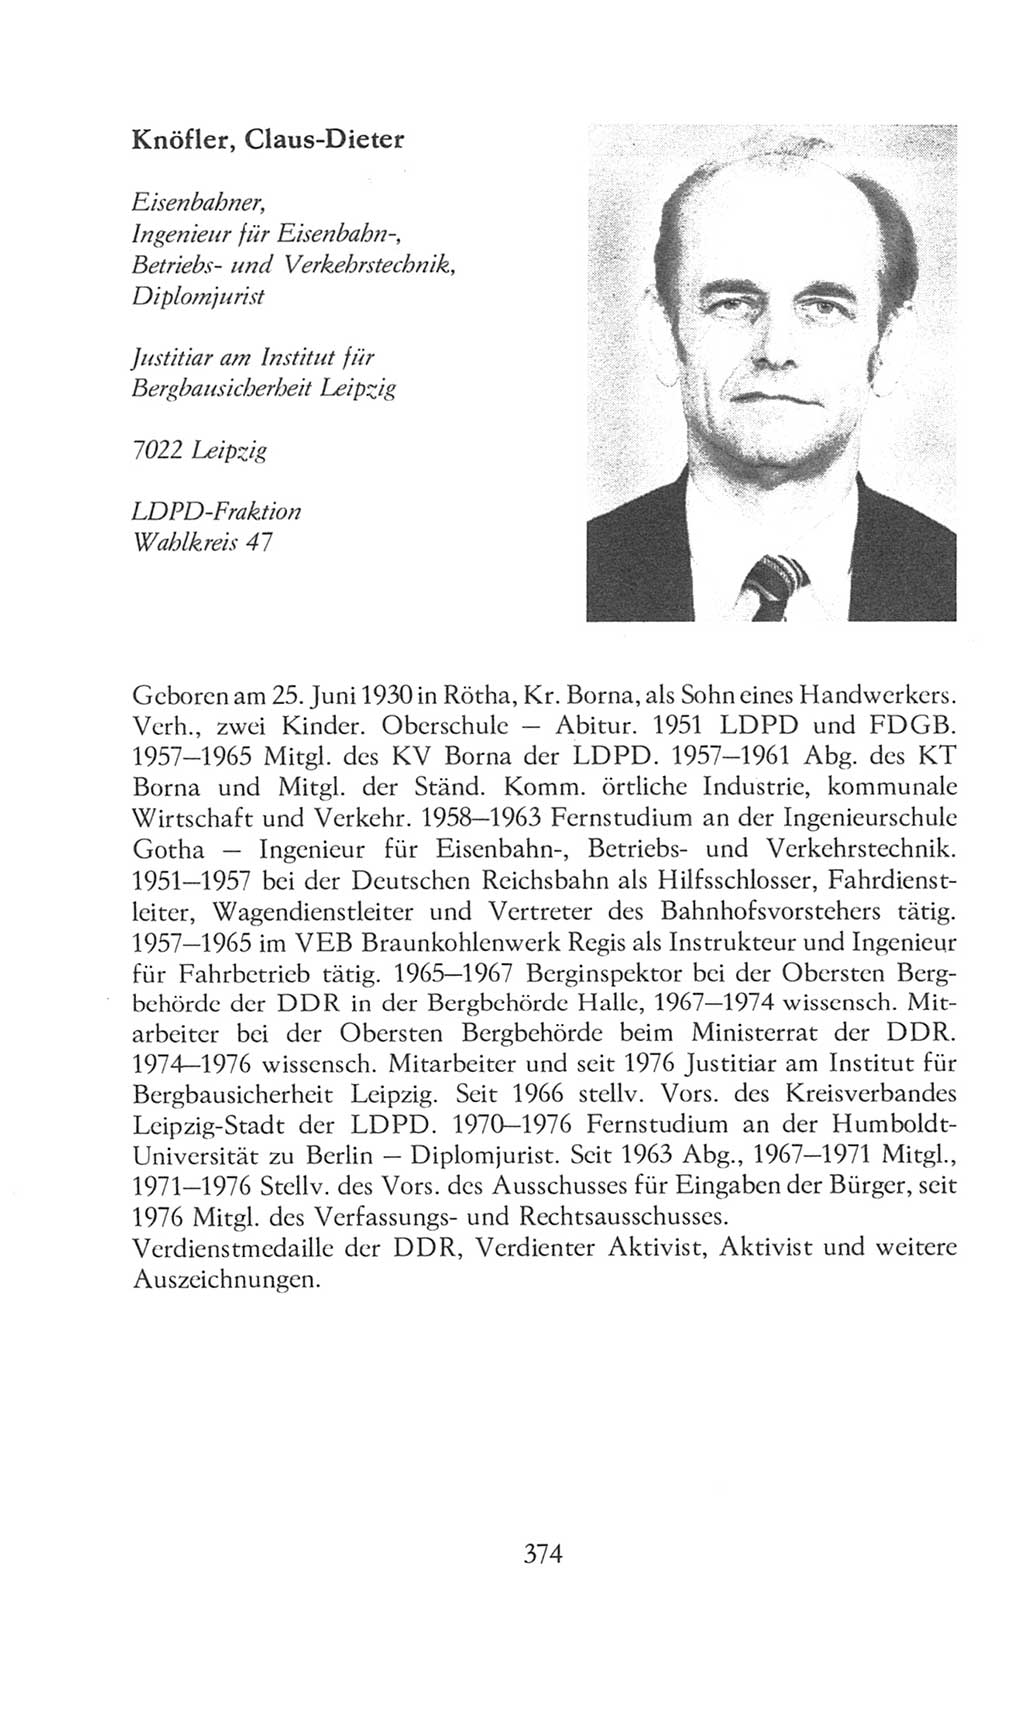 Volkskammer (VK) der Deutschen Demokratischen Republik (DDR), 8. Wahlperiode 1981-1986, Seite 374 (VK. DDR 8. WP. 1981-1986, S. 374)